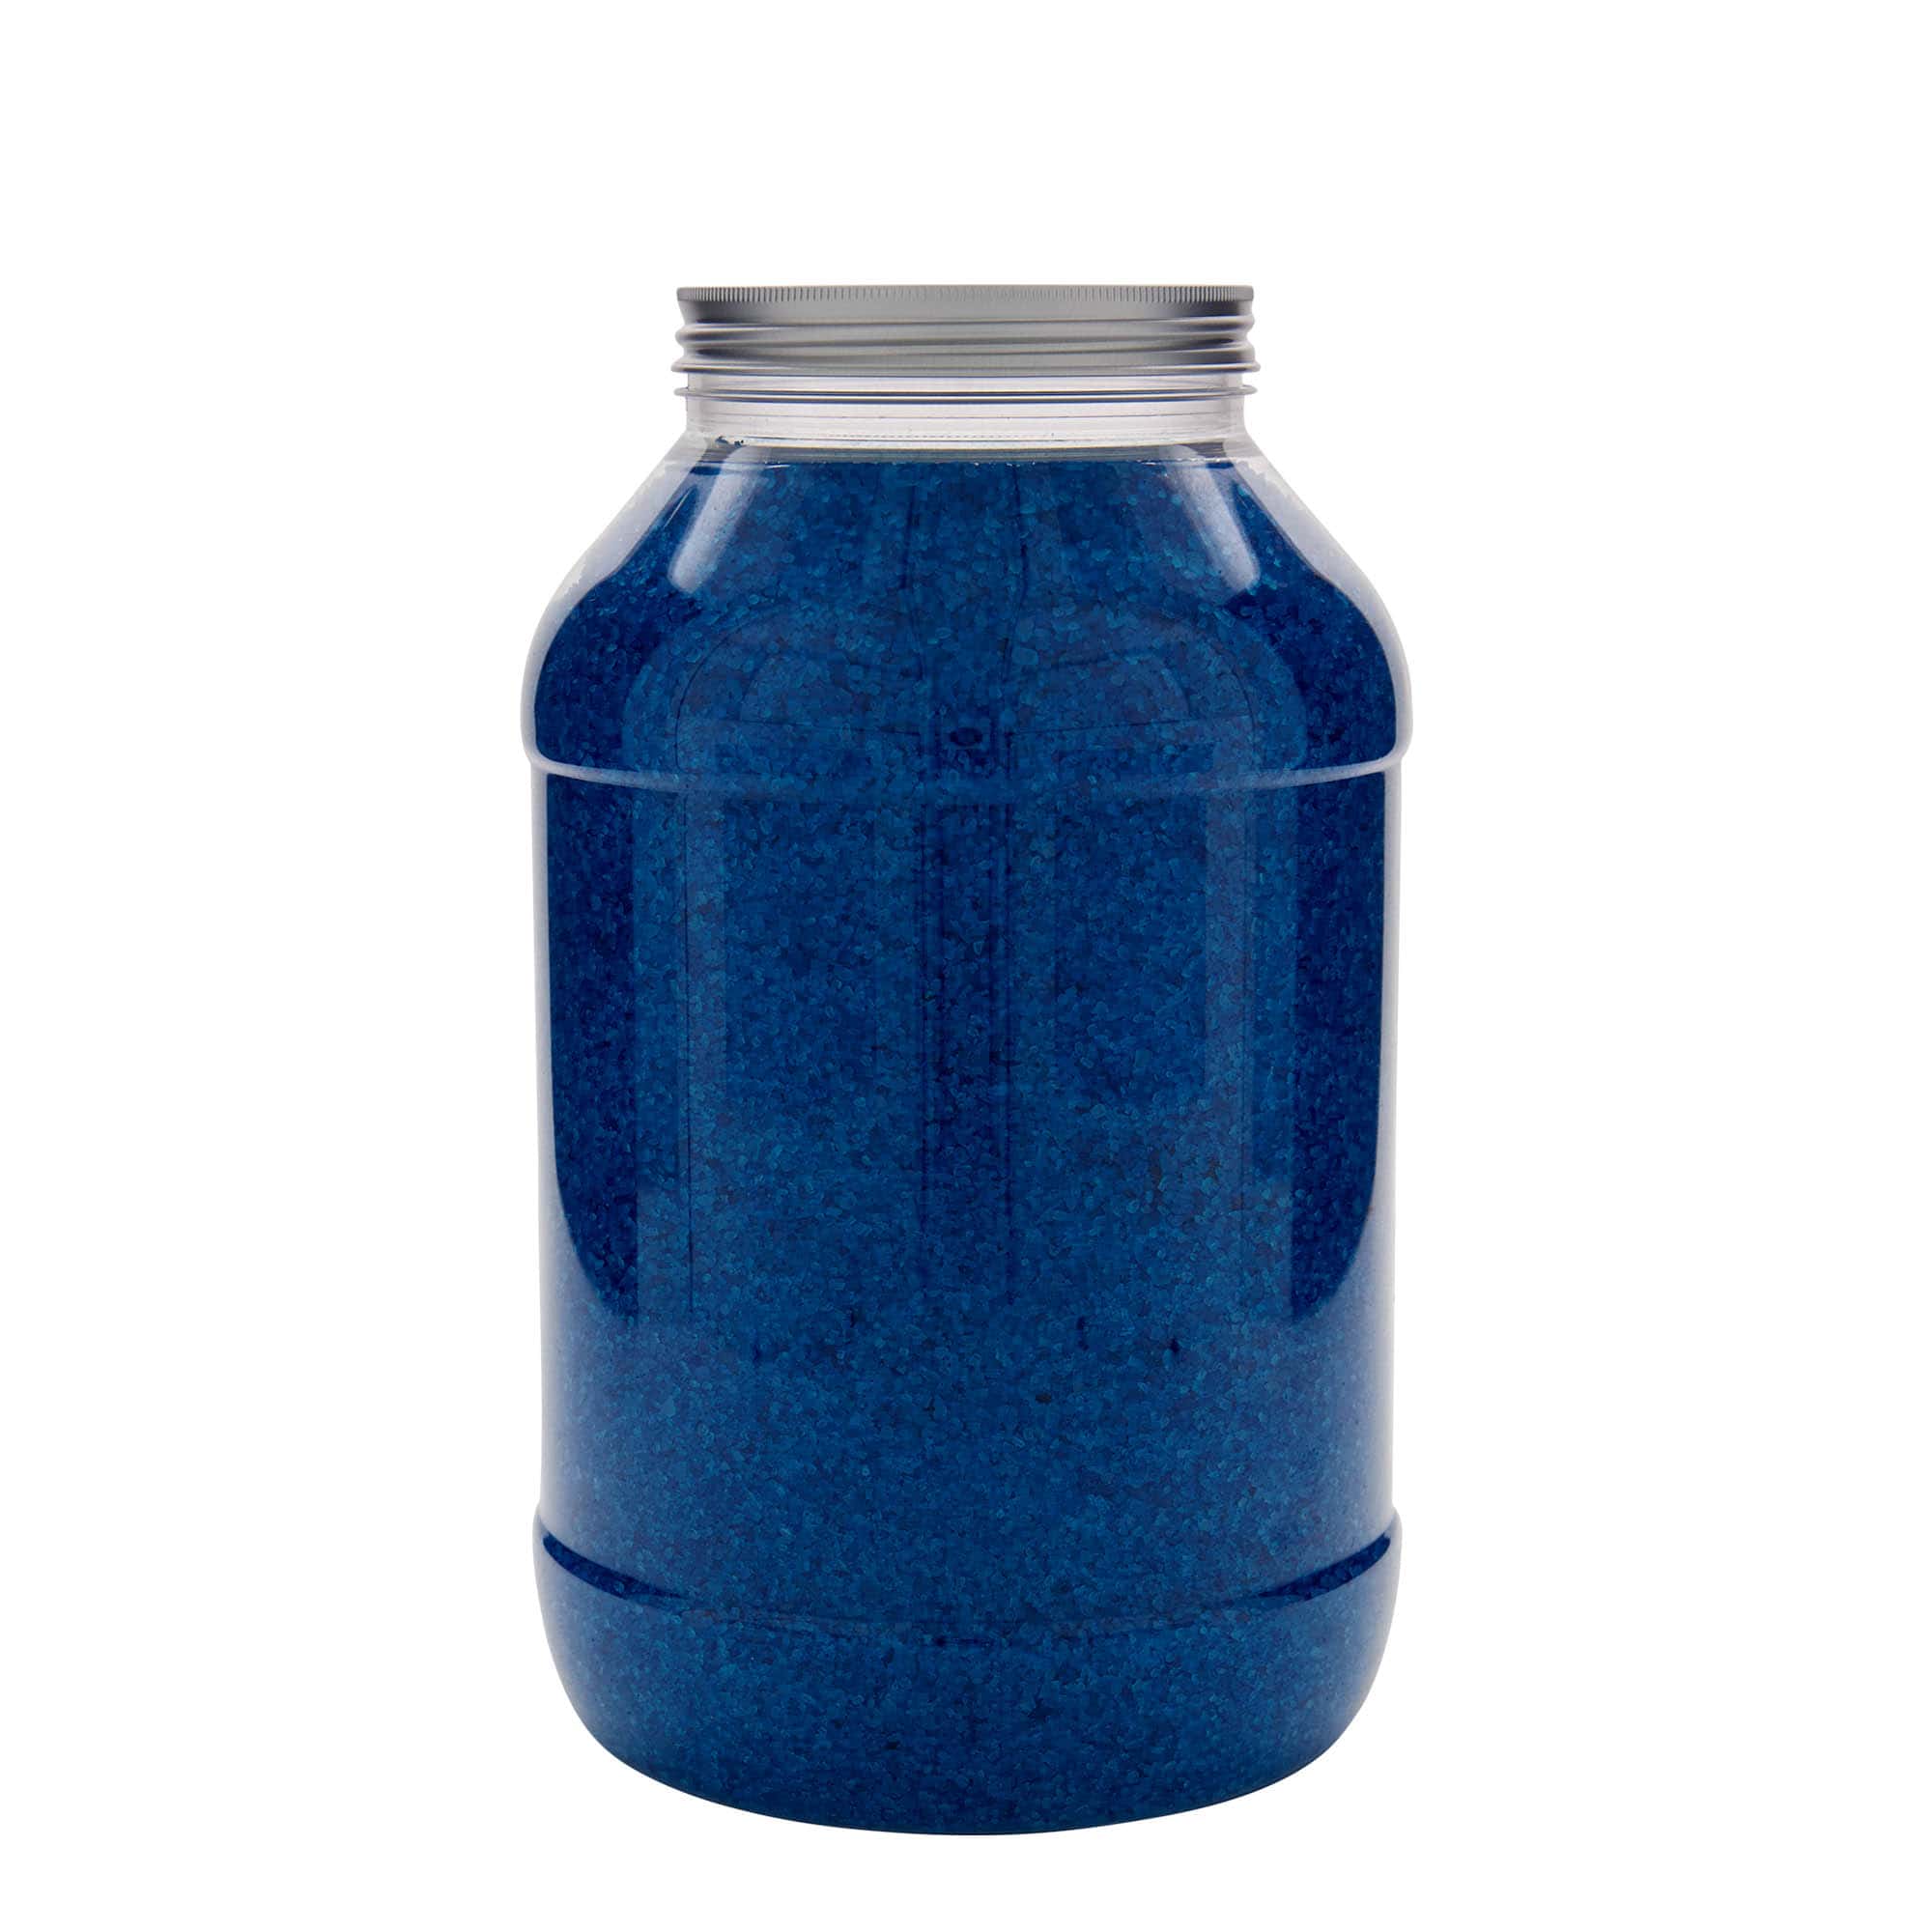 4,000 ml PET jar 'Lulu', plastic, closure: 100/400